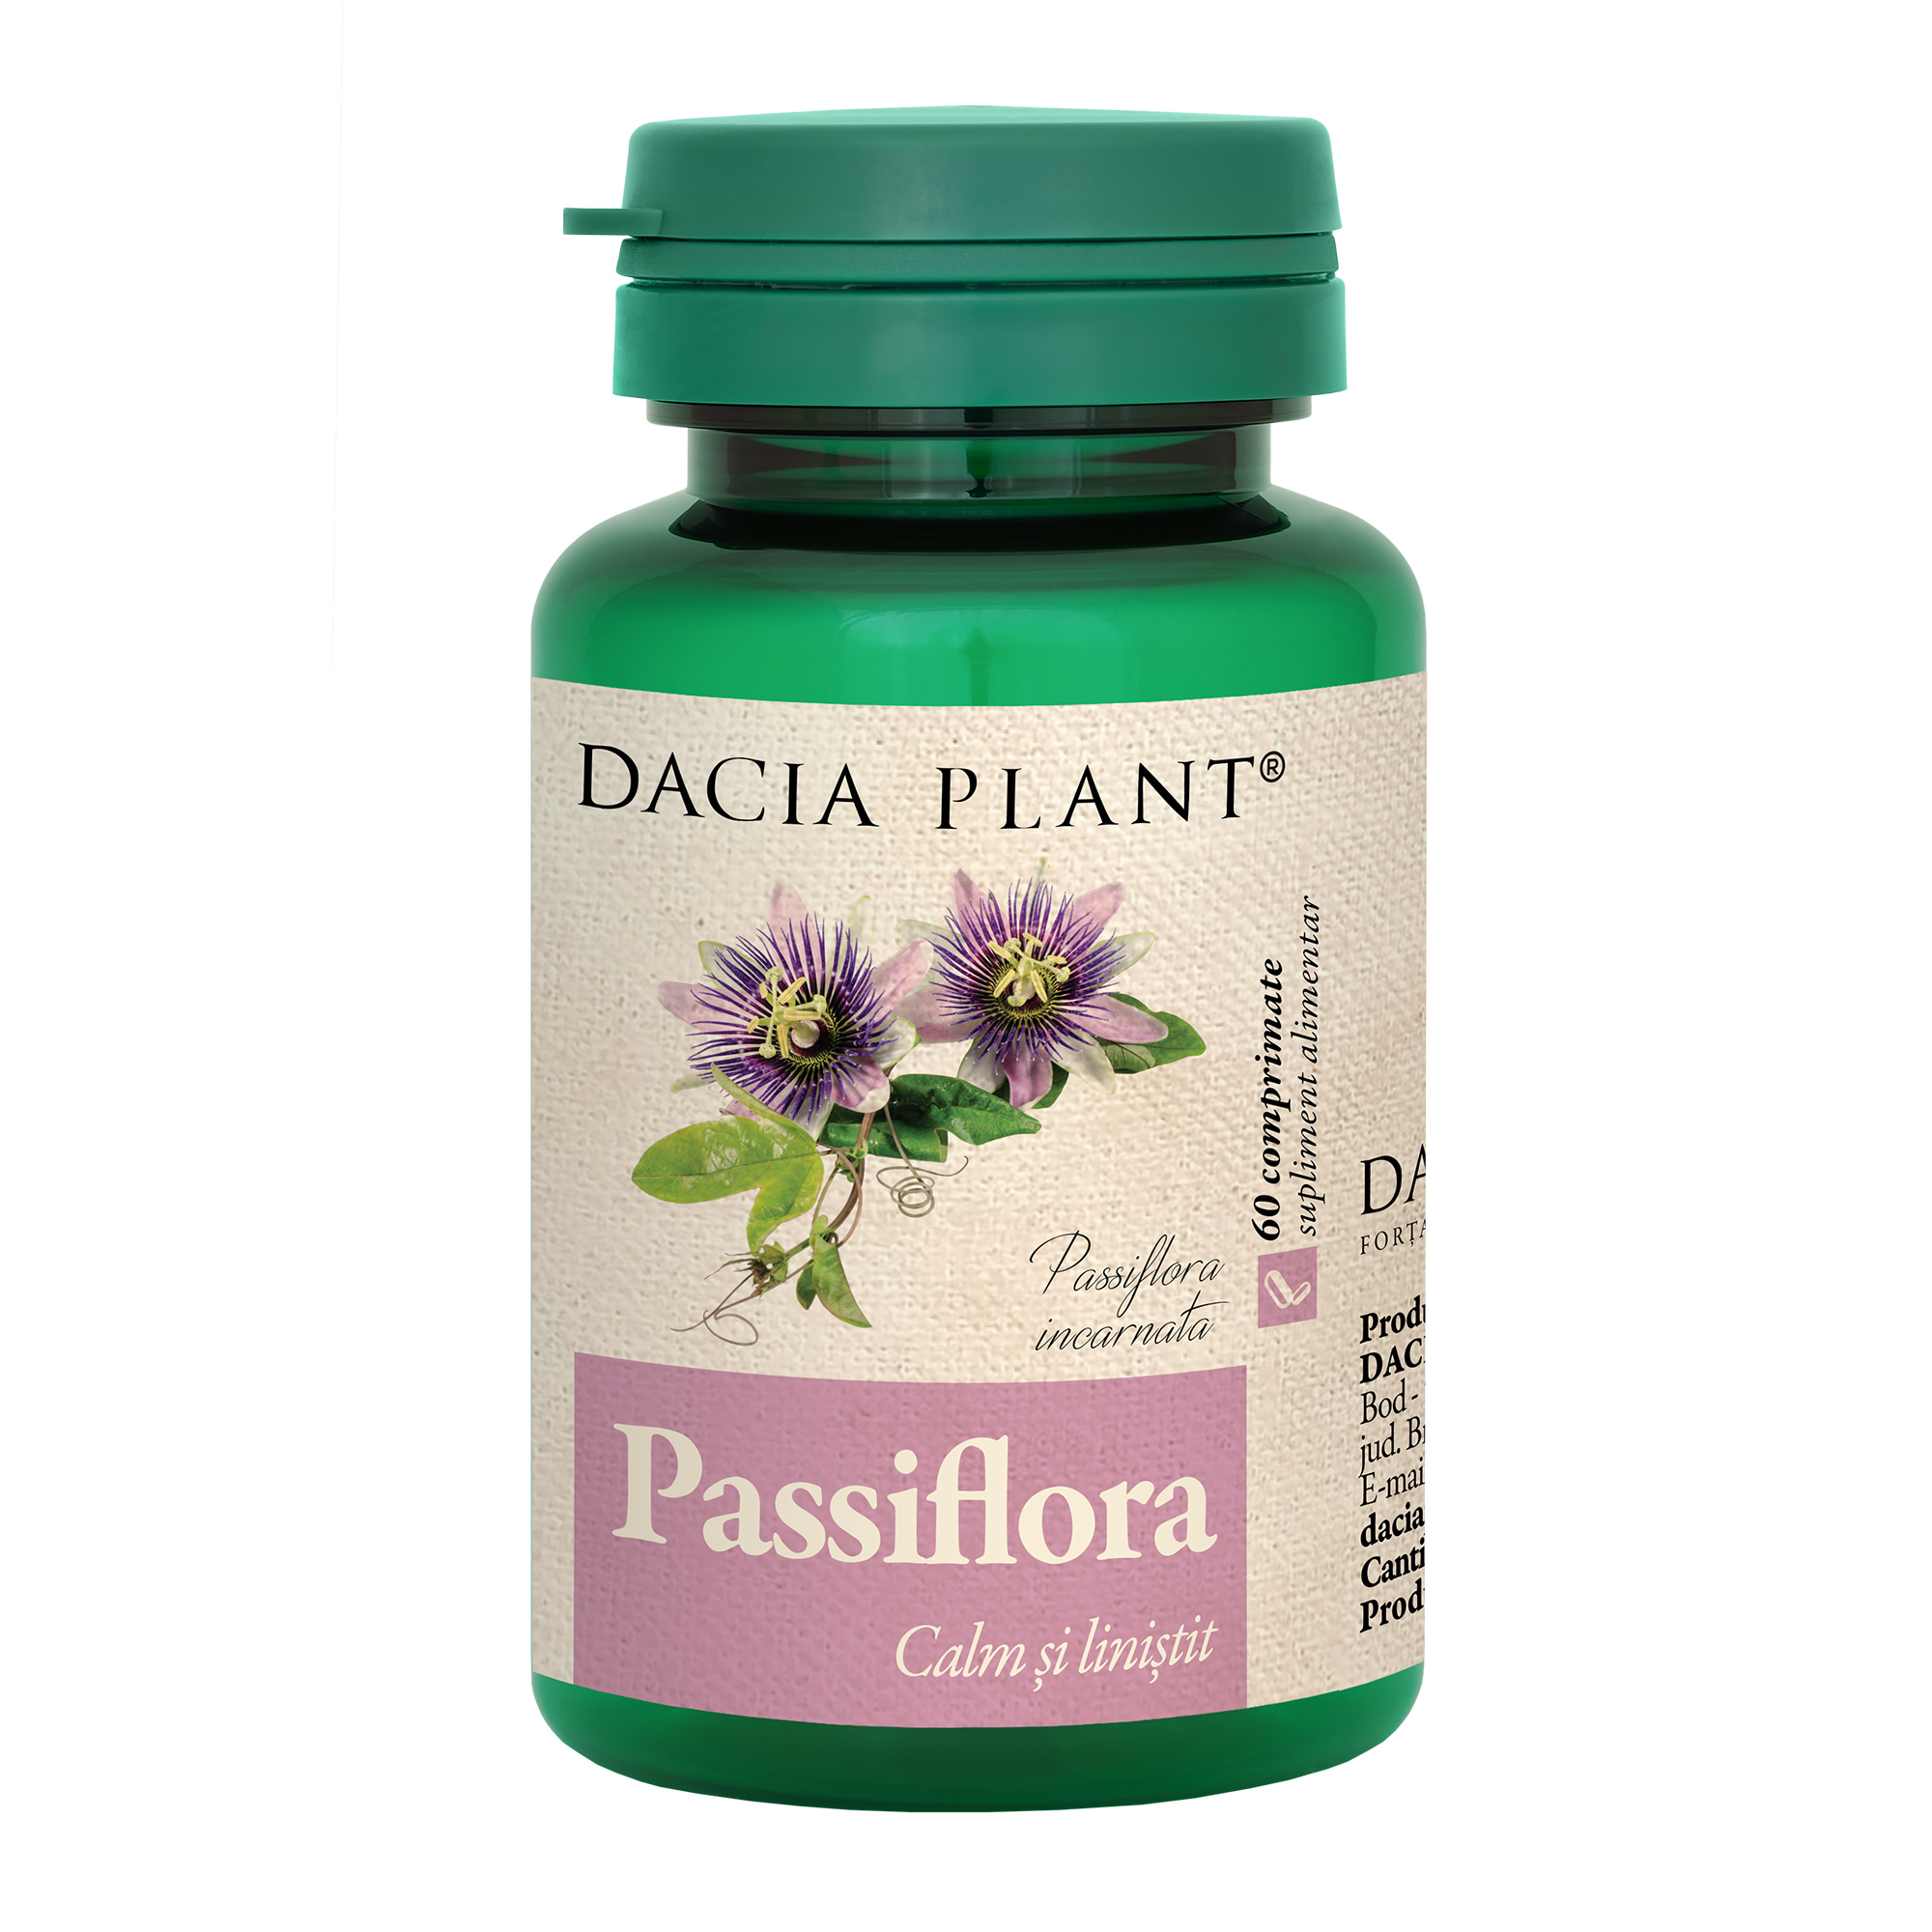 Passiflora comprimate Dacia Plant